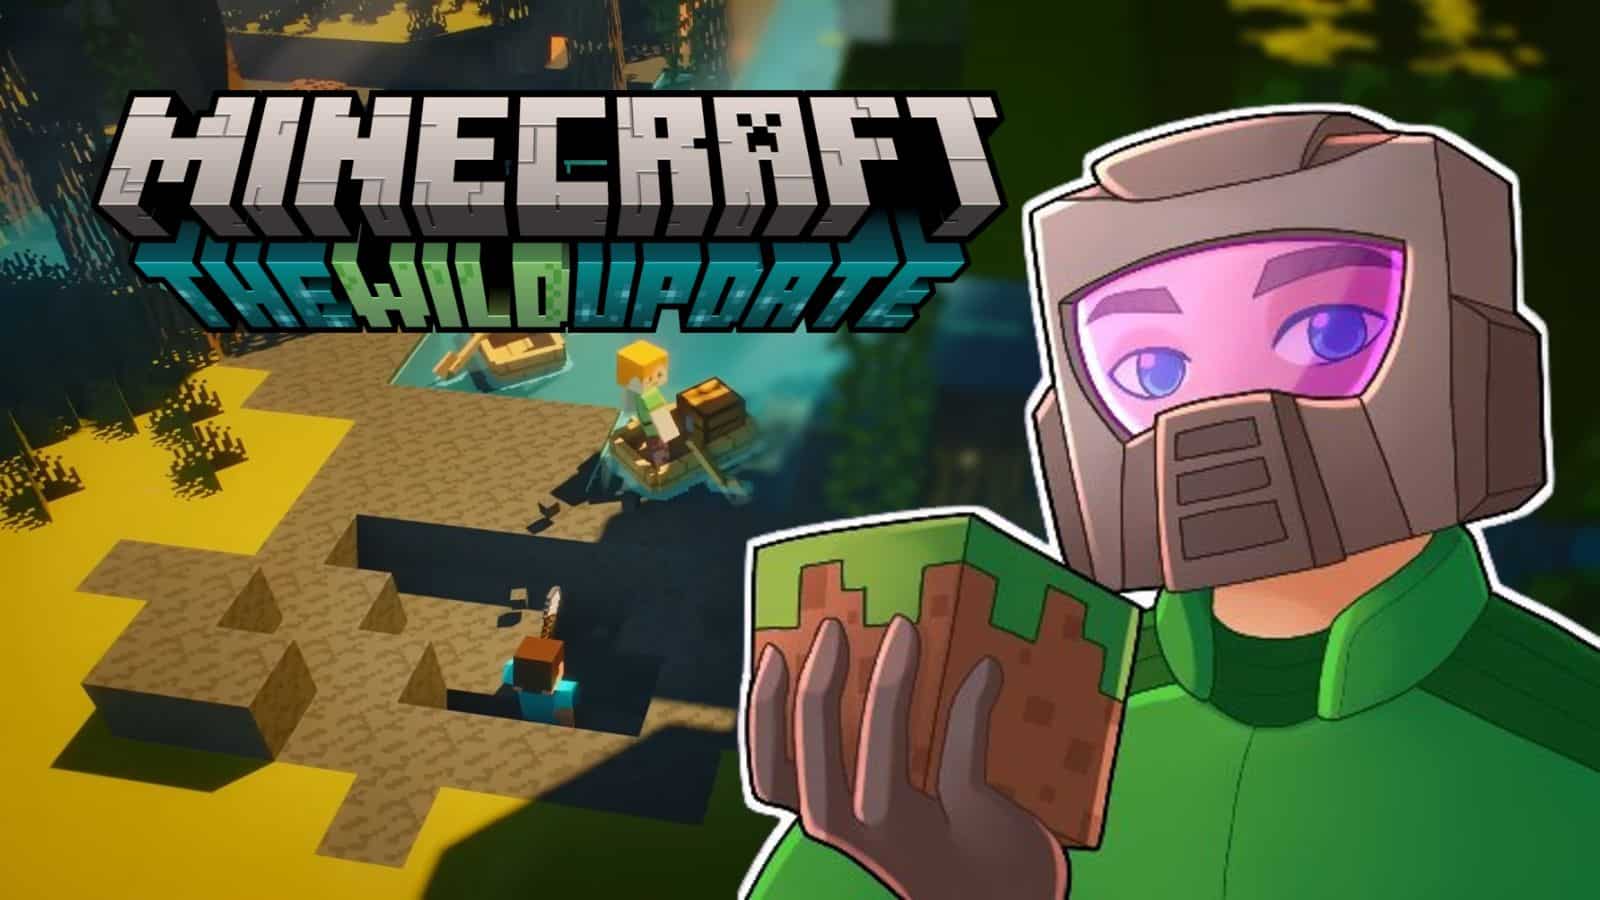 Minecraft 1.19 : The Wild Update 